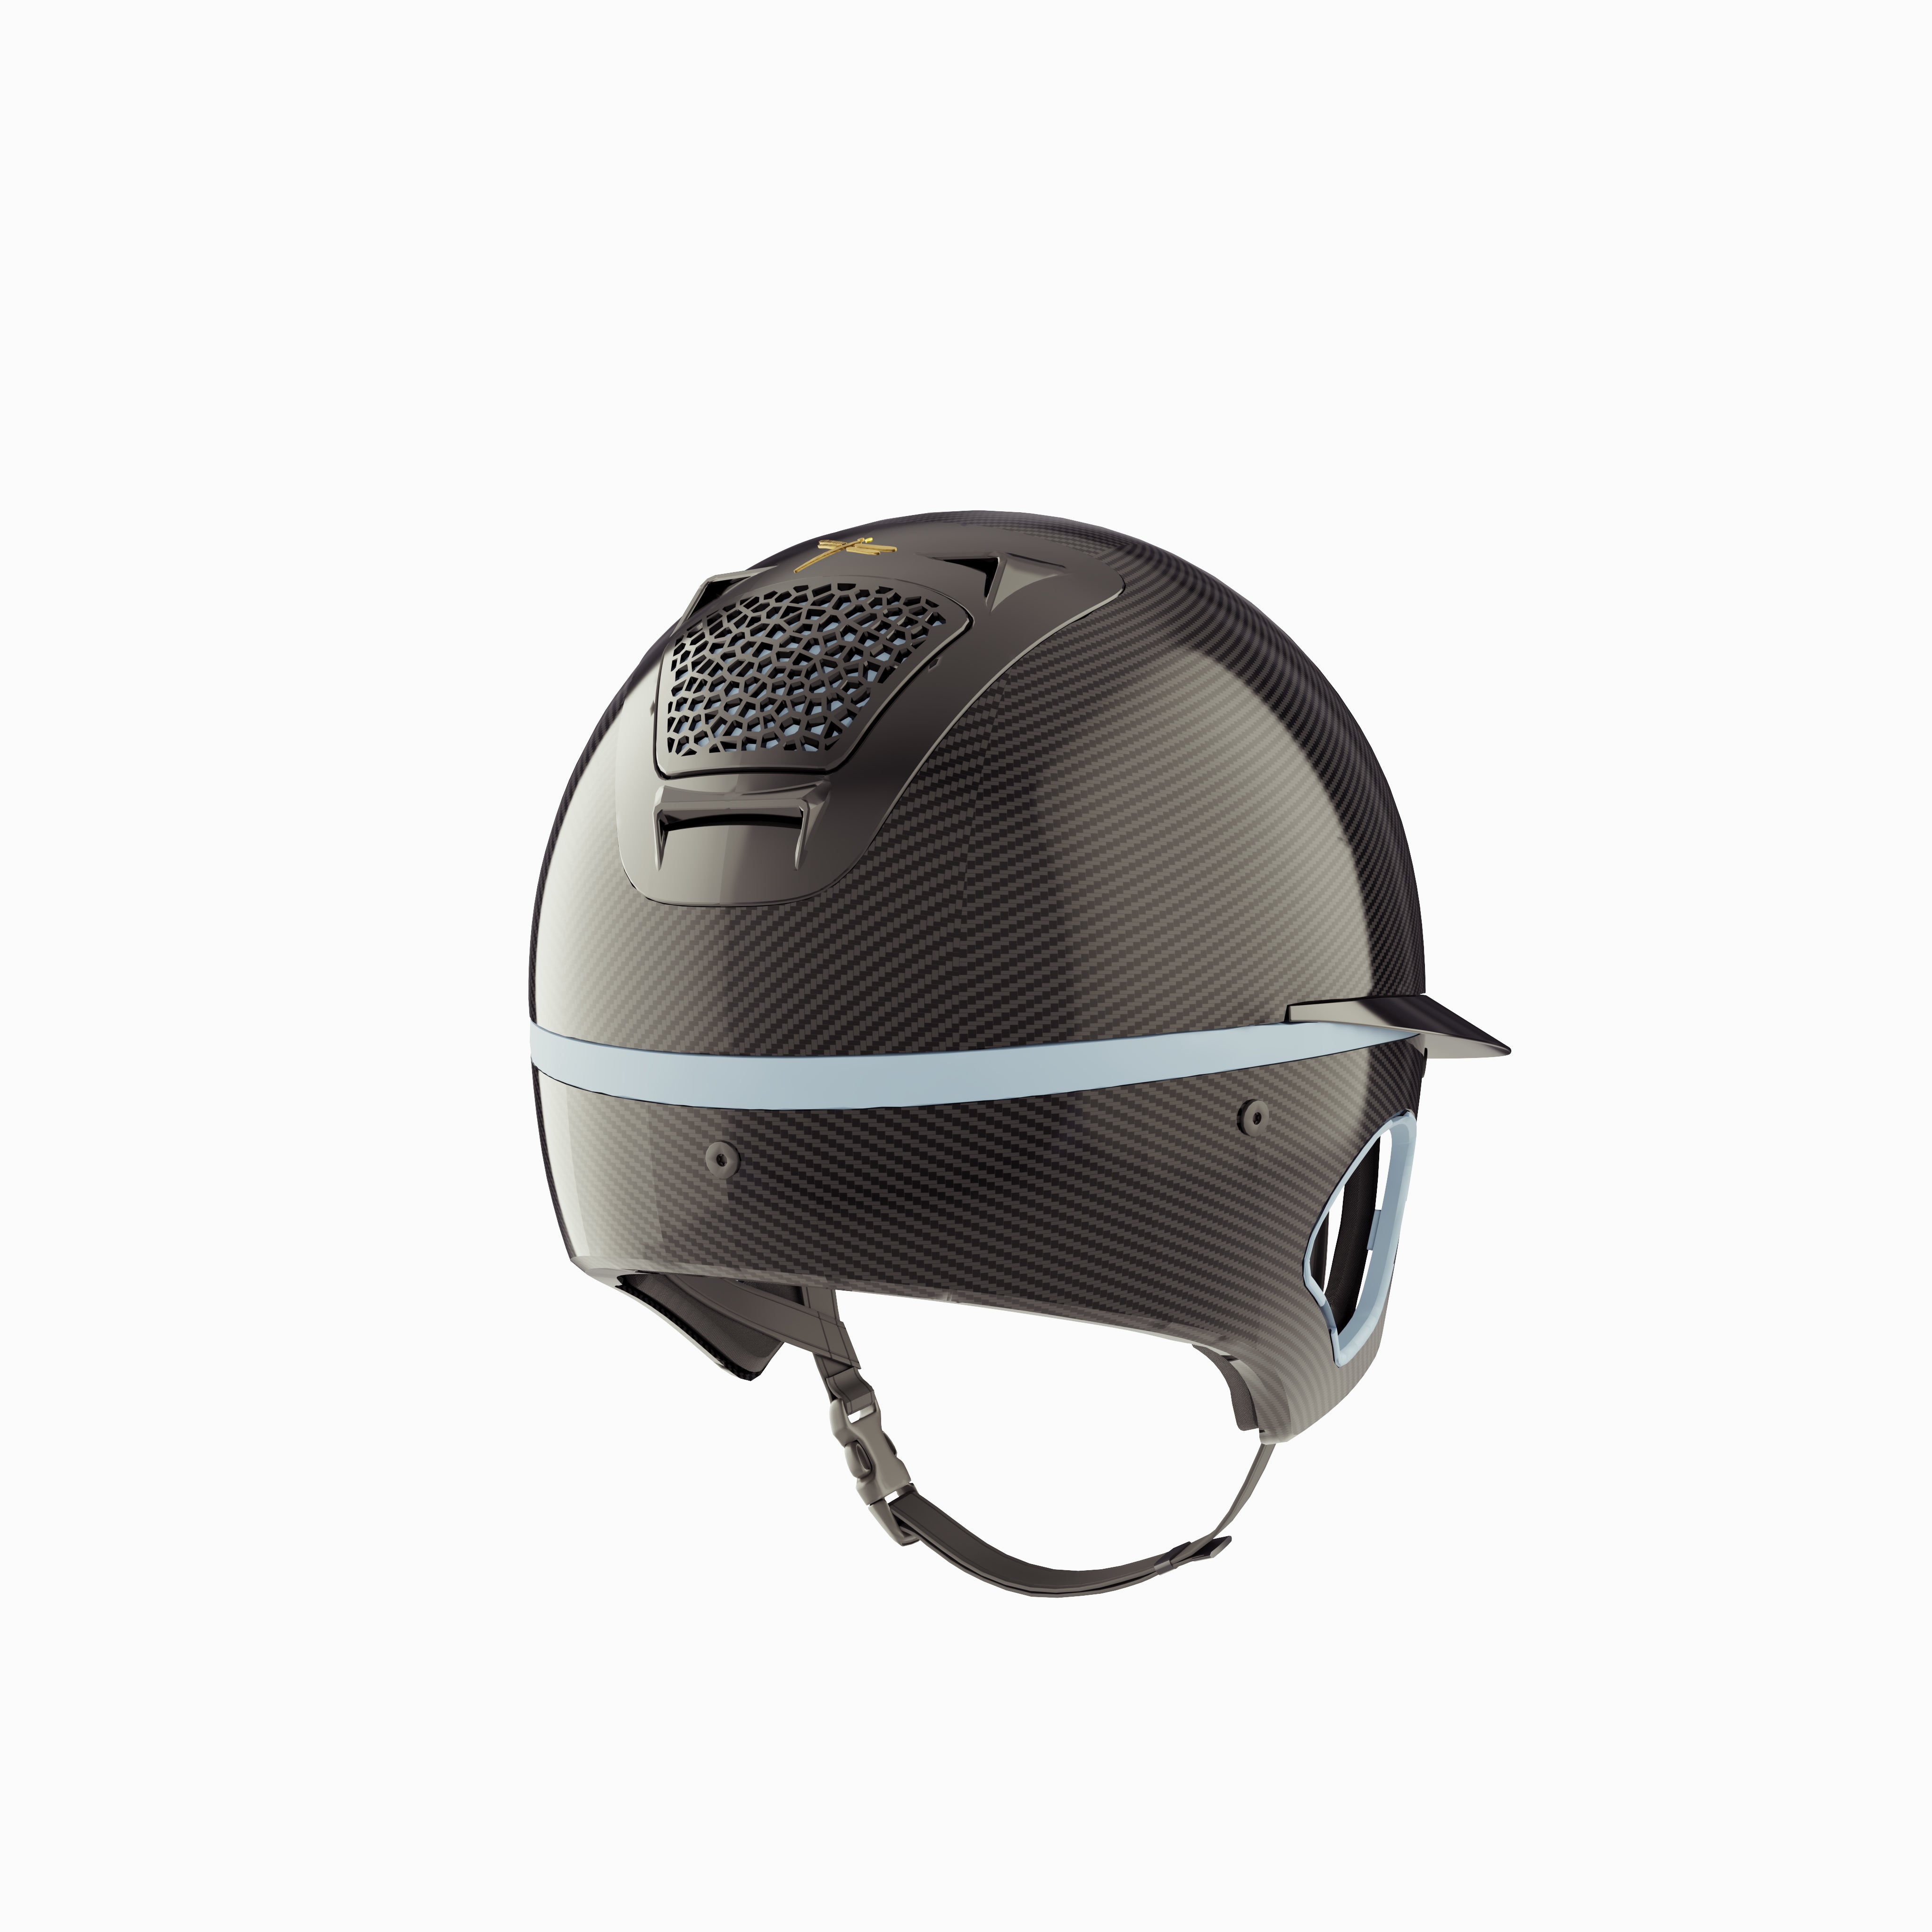 Voronoï Carbon Helmet With Temple Protection - Black/Sky Blue